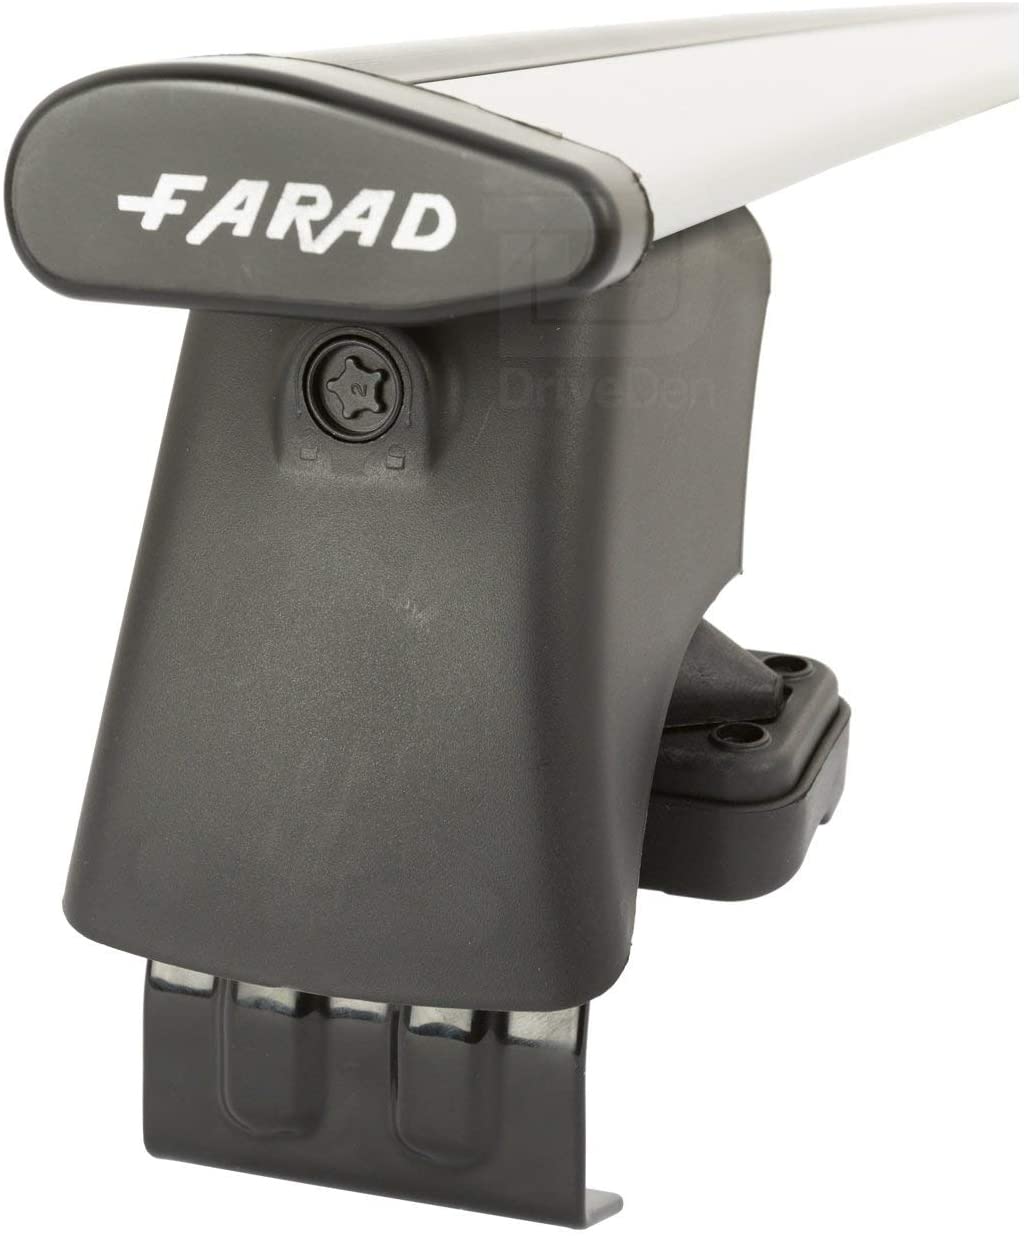 FARAD-Kit H2 per barre portatutto - Kia Carens 2013> (senza corrimano)